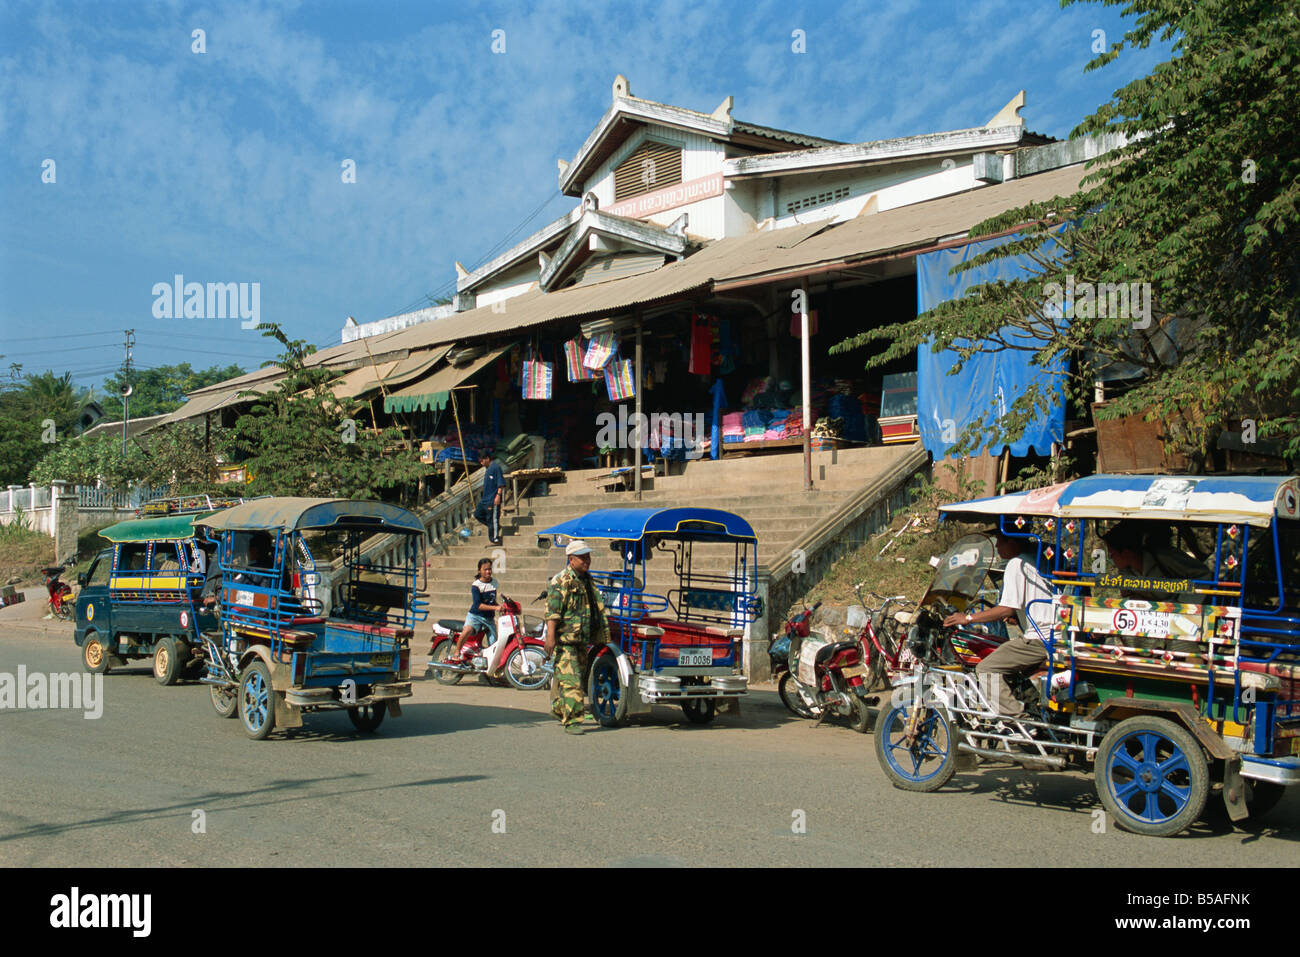 Marché Central Luang Prabang Laos Indochine Asie Asie du sud-est Banque D'Images